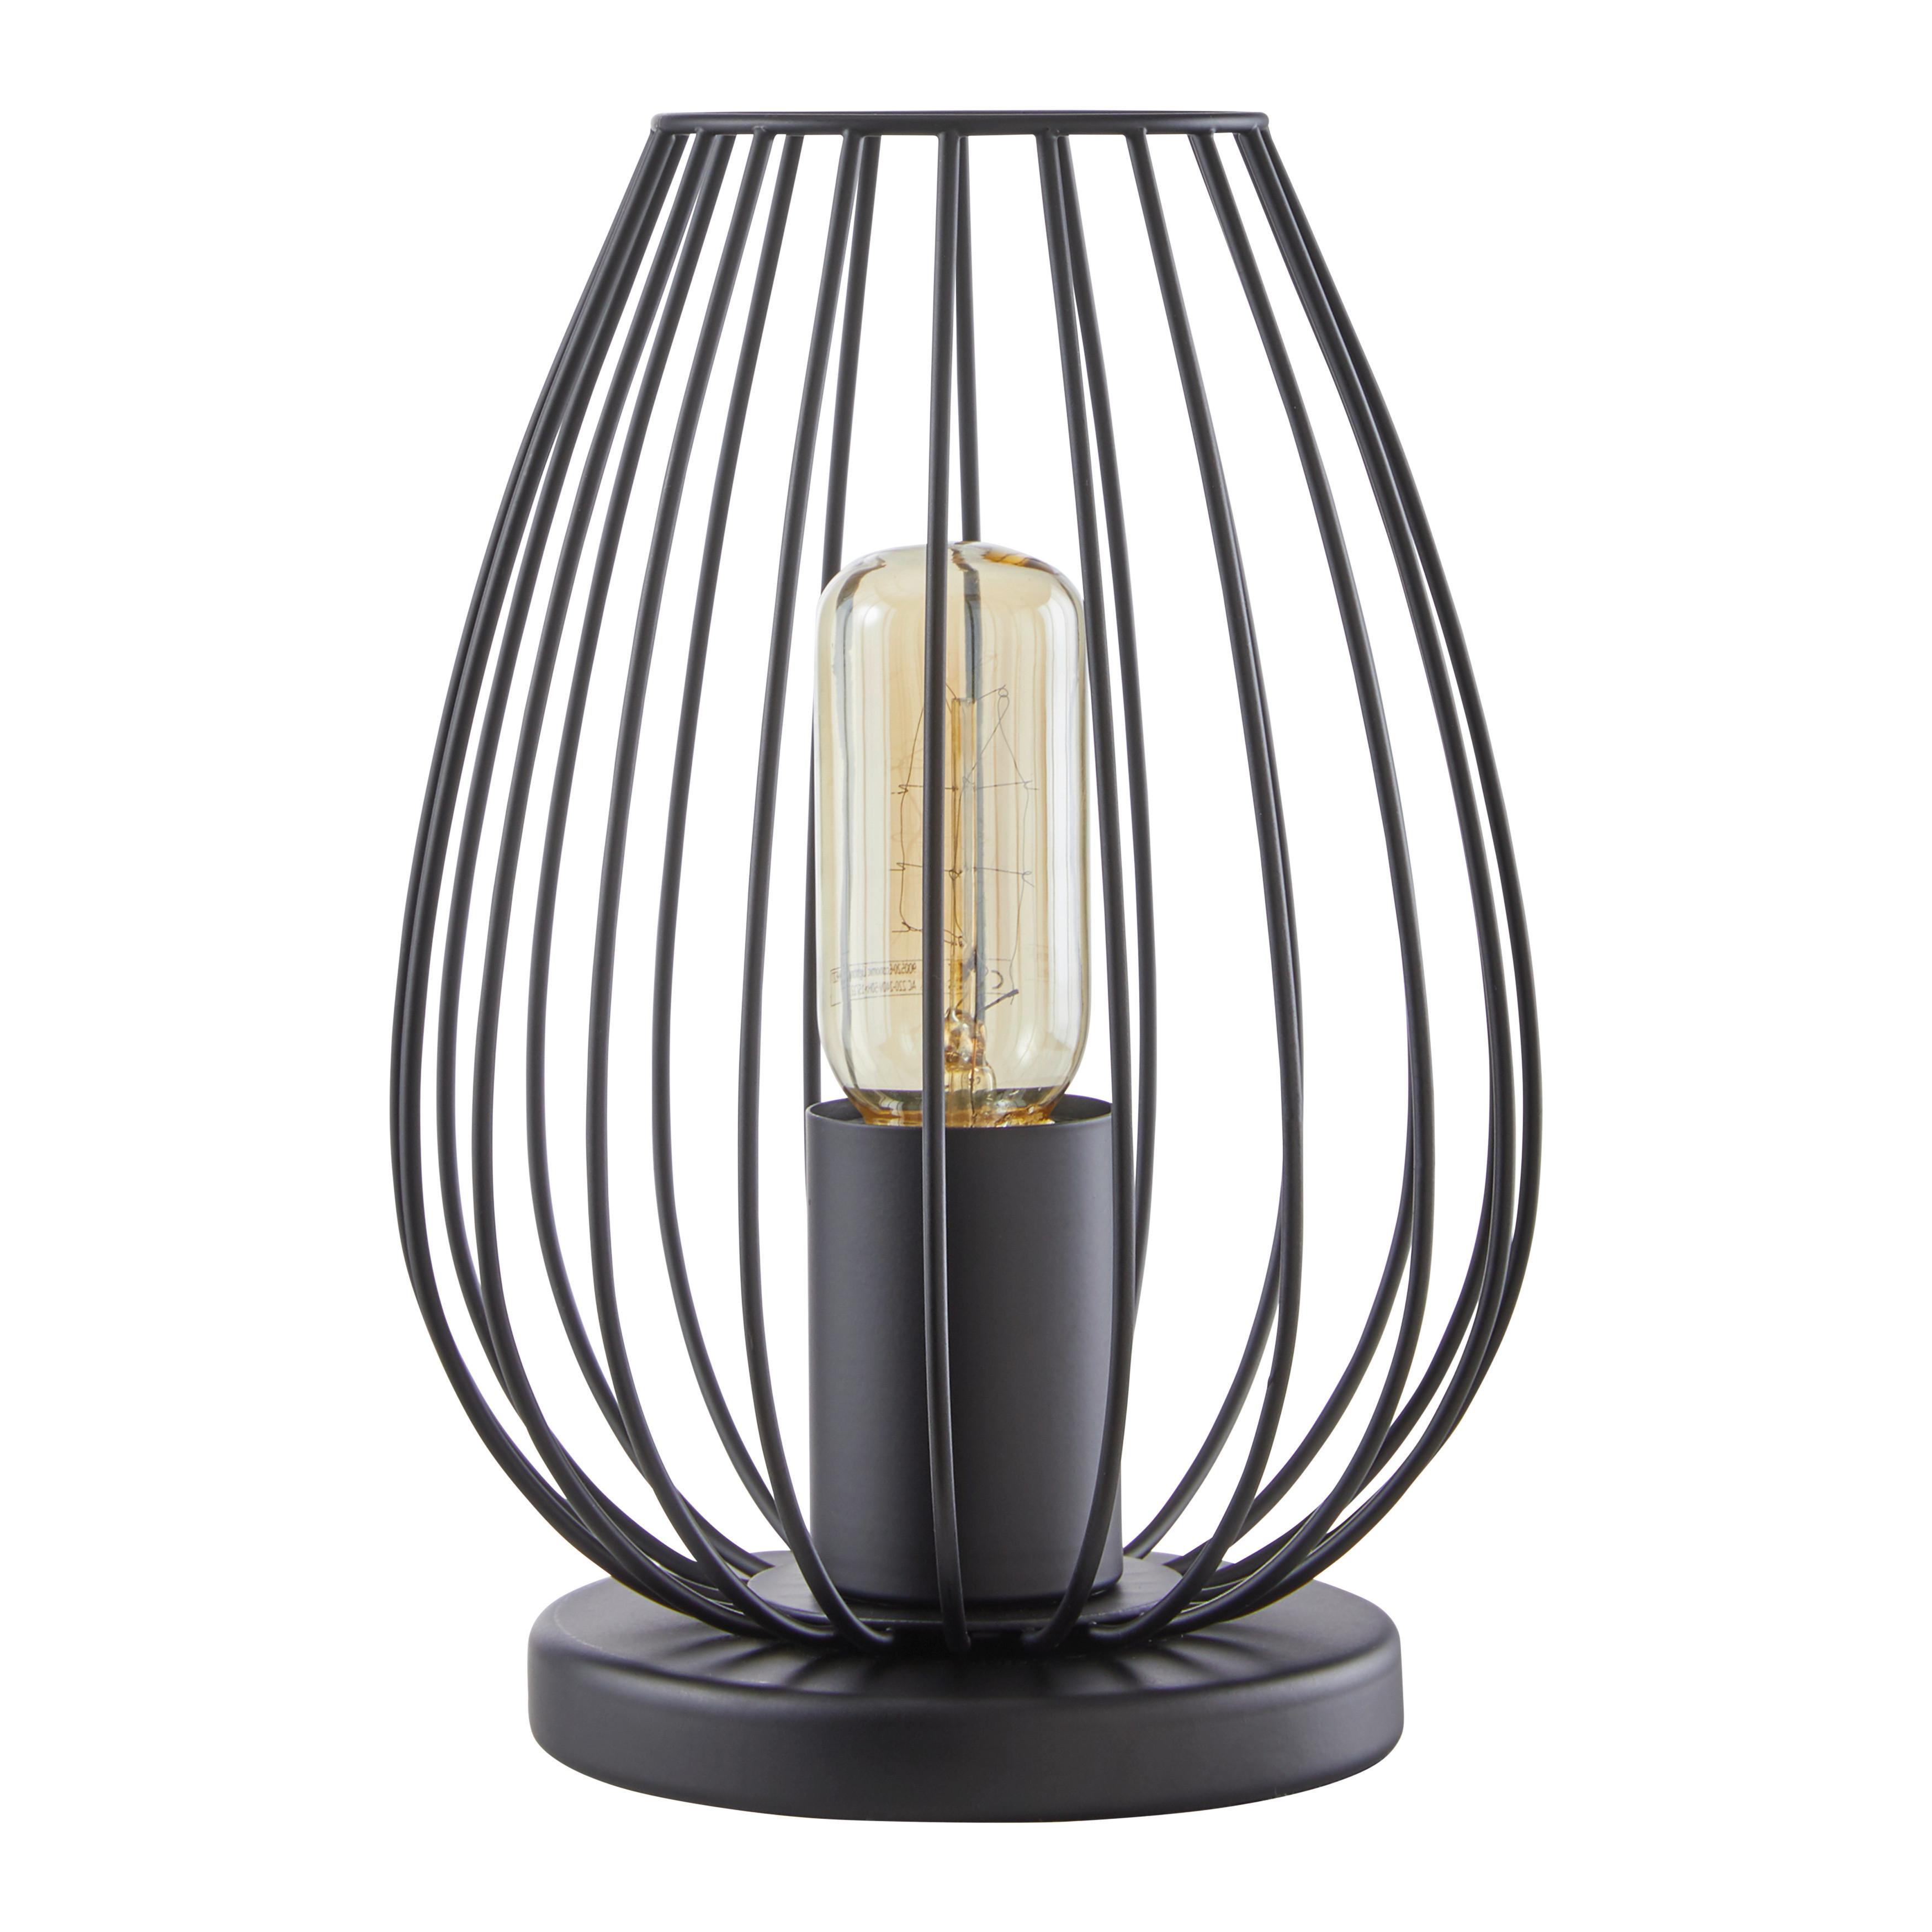 Stolová Lampa Dioder 16/23cm, 60 Watt - čierna, Štýlový, kov (16/23cm) - Modern Living